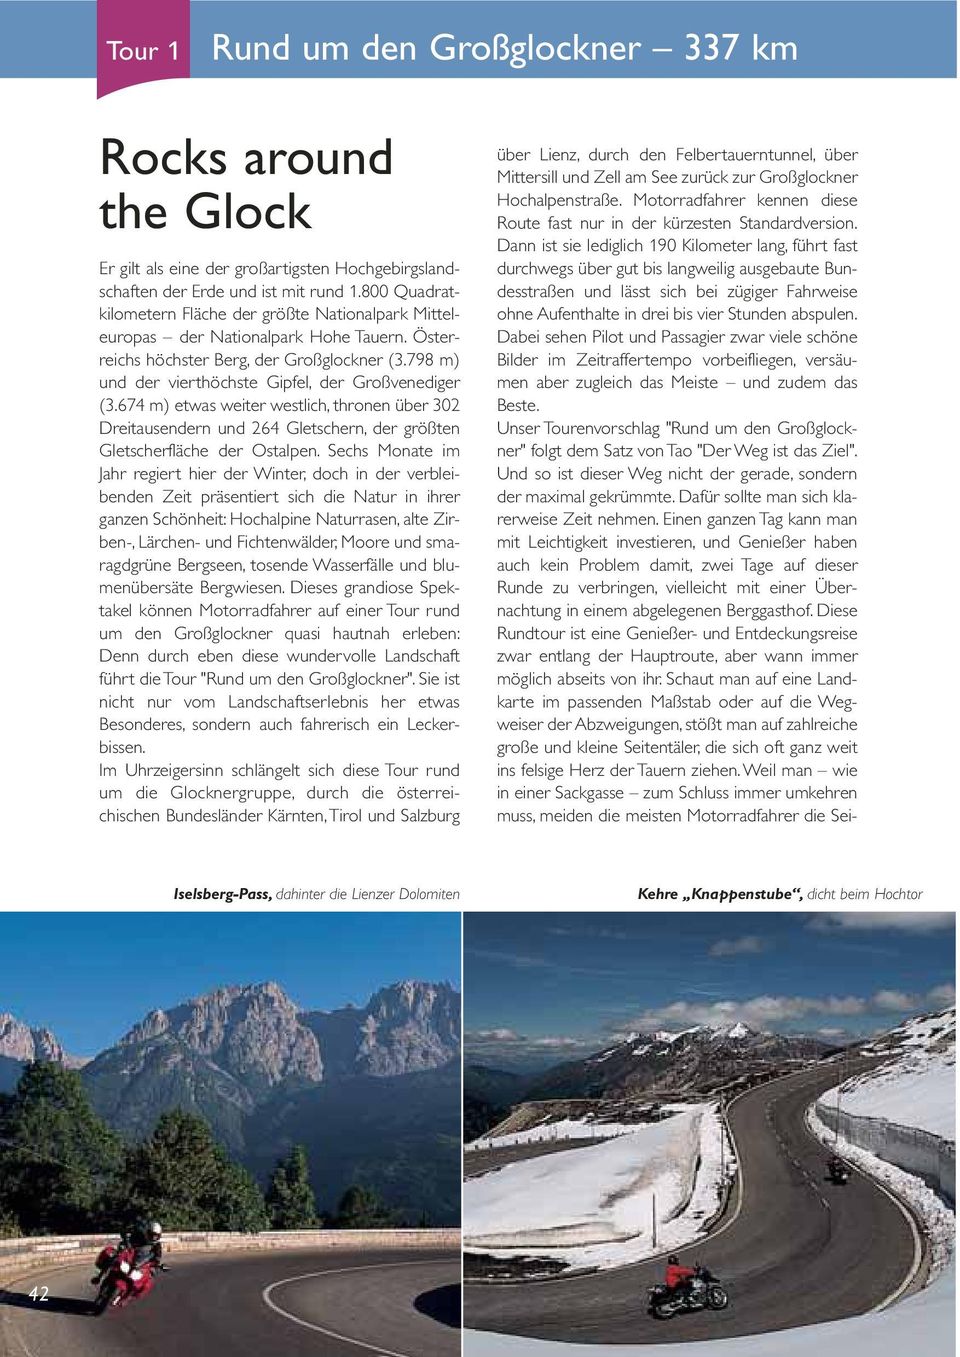 798 m) und der vierthöchste Gipfel, der Großvenediger (3.674 m) etwas weiter westlich, thronen über 302 Dreitausendern und 264 Gletschern, der größten Gletscherfläche der Ostalpen.